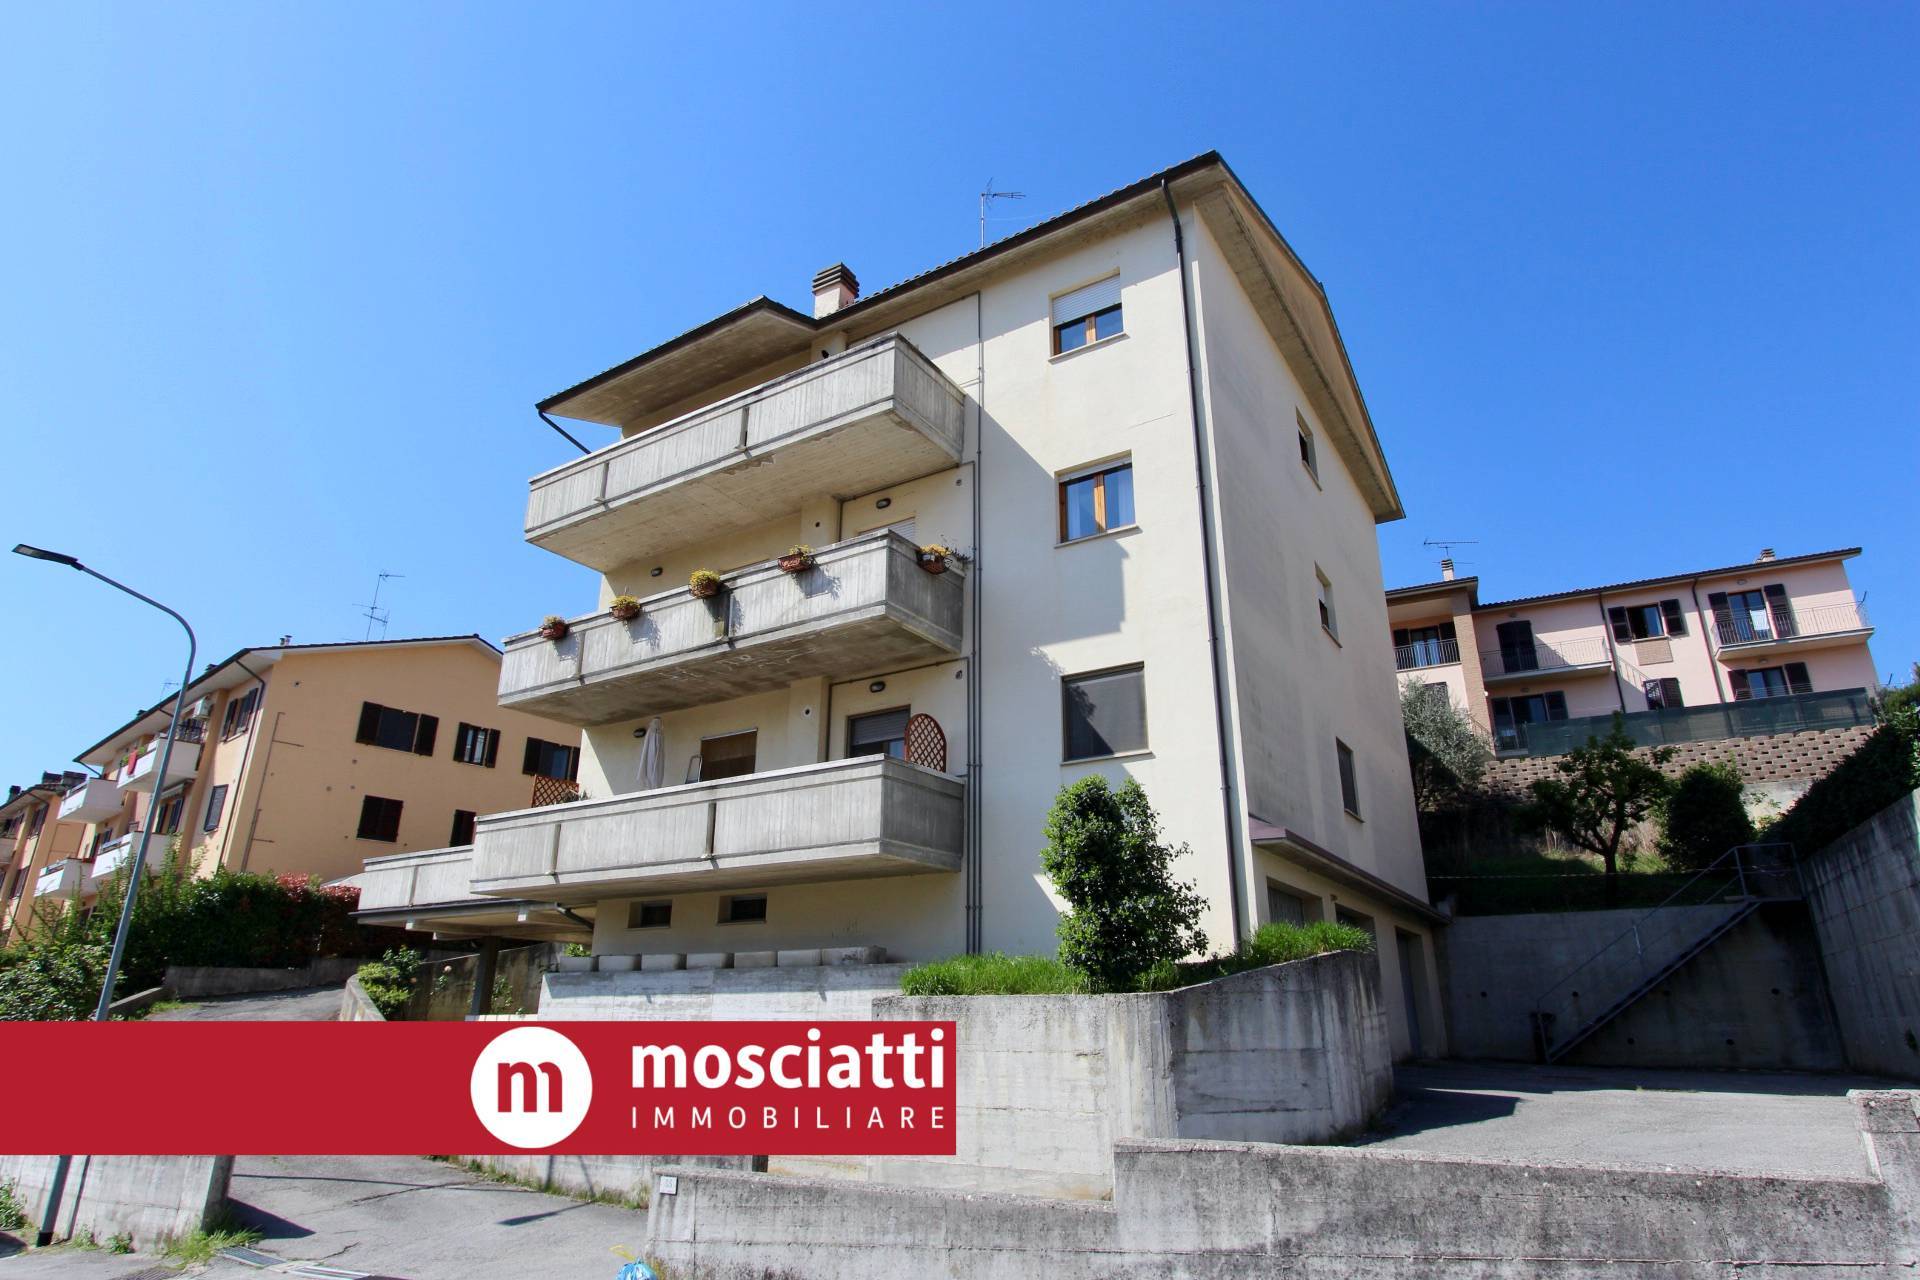 Appartamento in vendita a Castelraimondo, 2 locali, prezzo € 135.000 | PortaleAgenzieImmobiliari.it